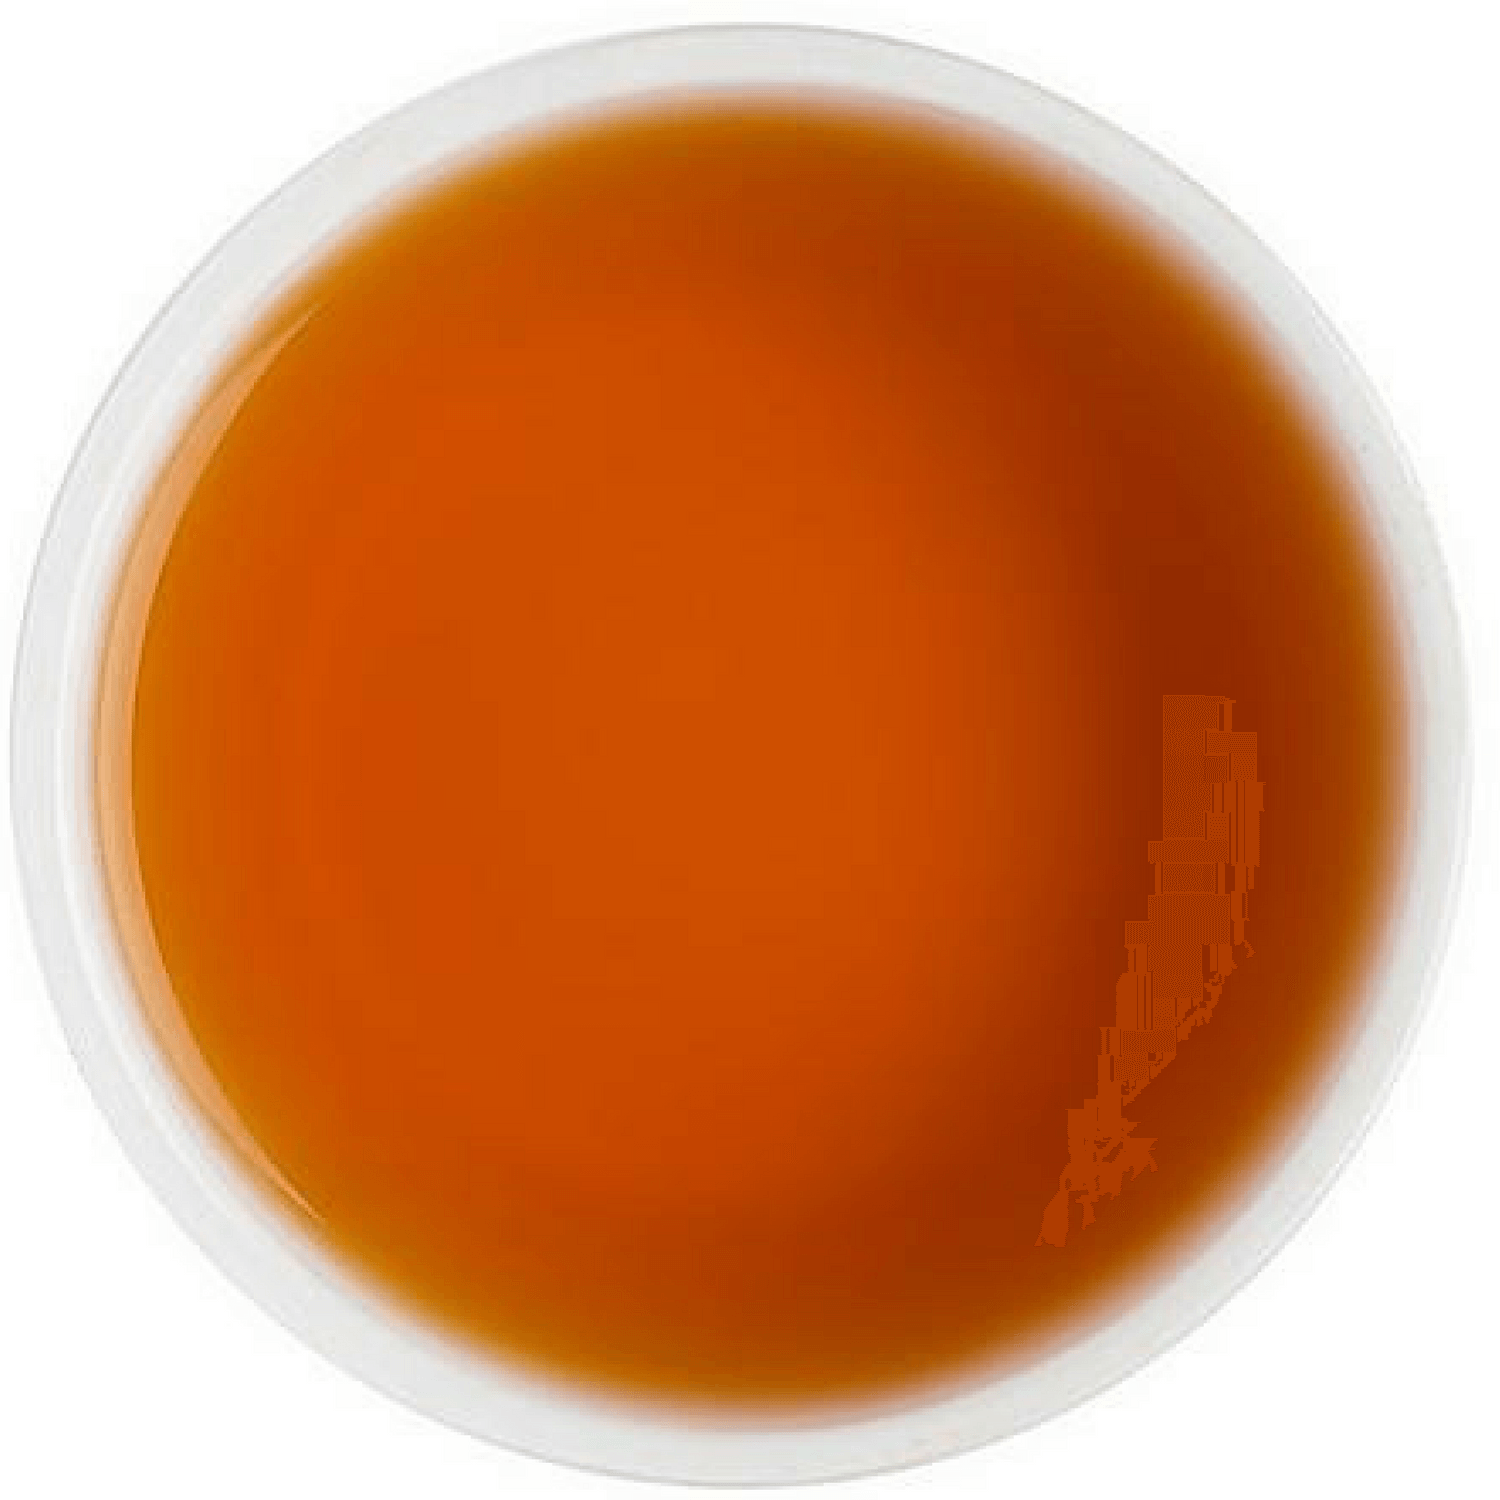 Earl Grey Darjeeling Tea - Tearaja